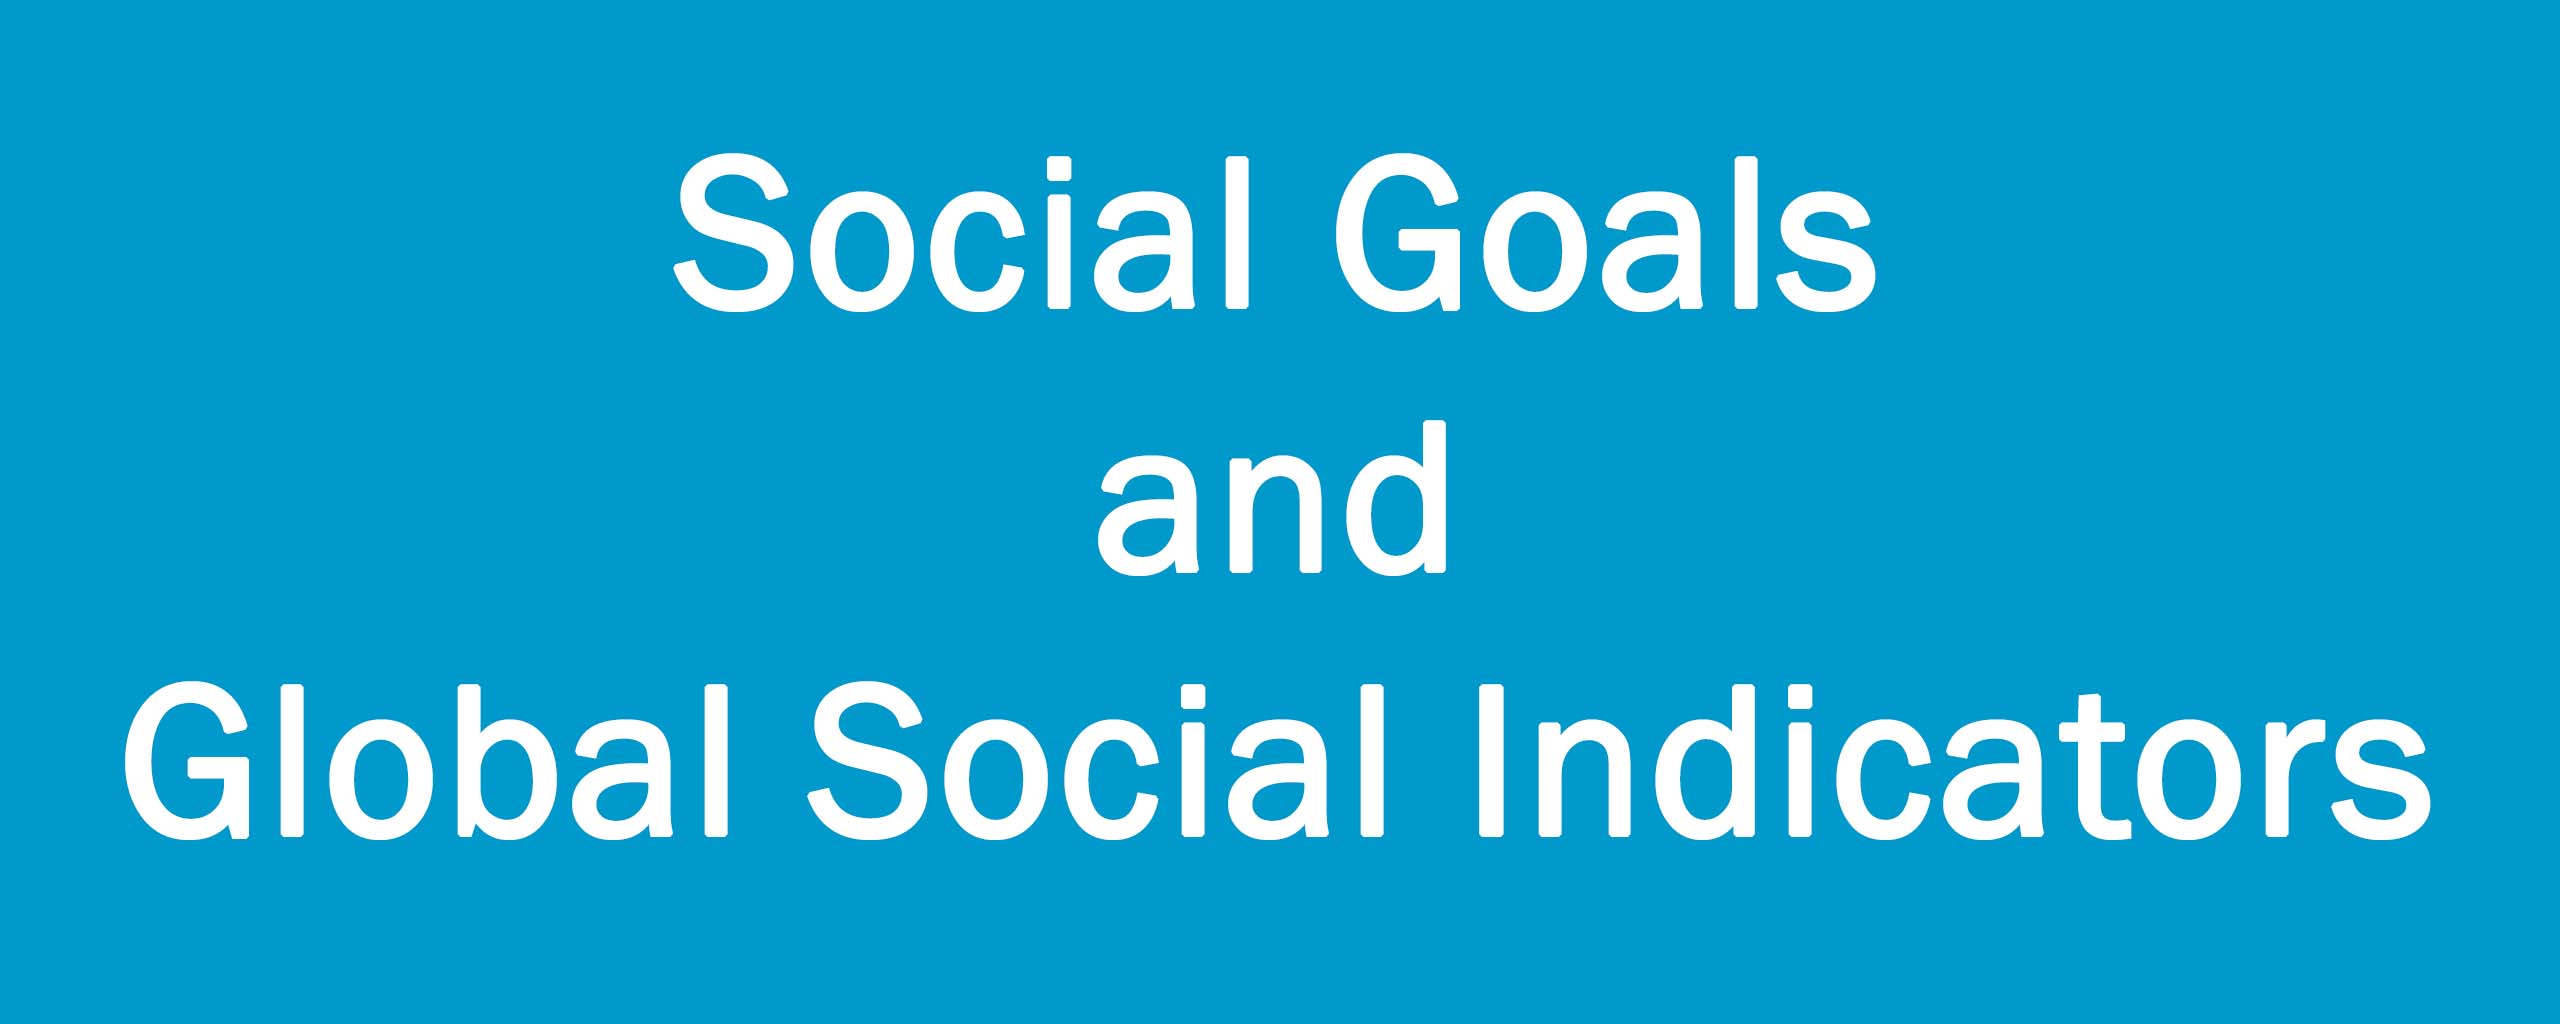 Social Goals and Global Social Indicators 